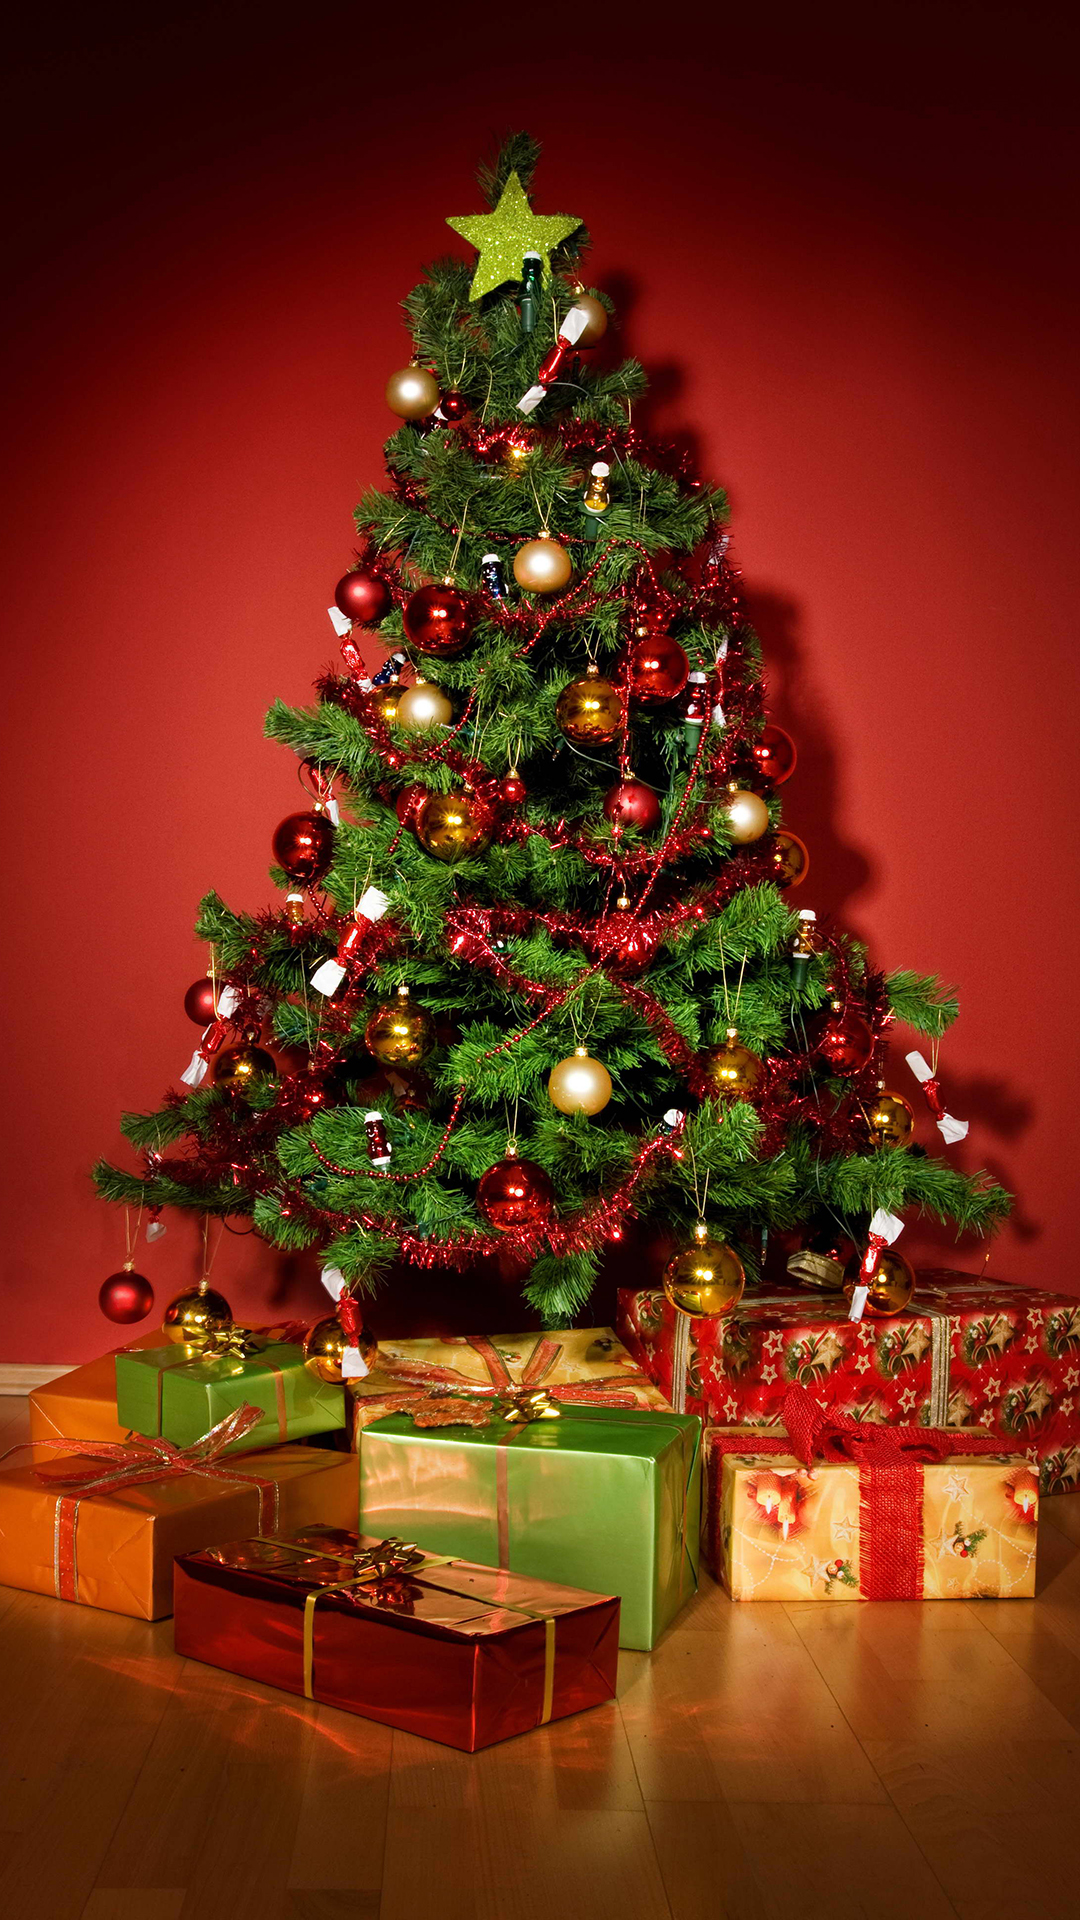 weihnachtsbaum tapete,weihnachtsbaum,weihnachtsdekoration,weihnachten,baum,weihnachtsschmuck